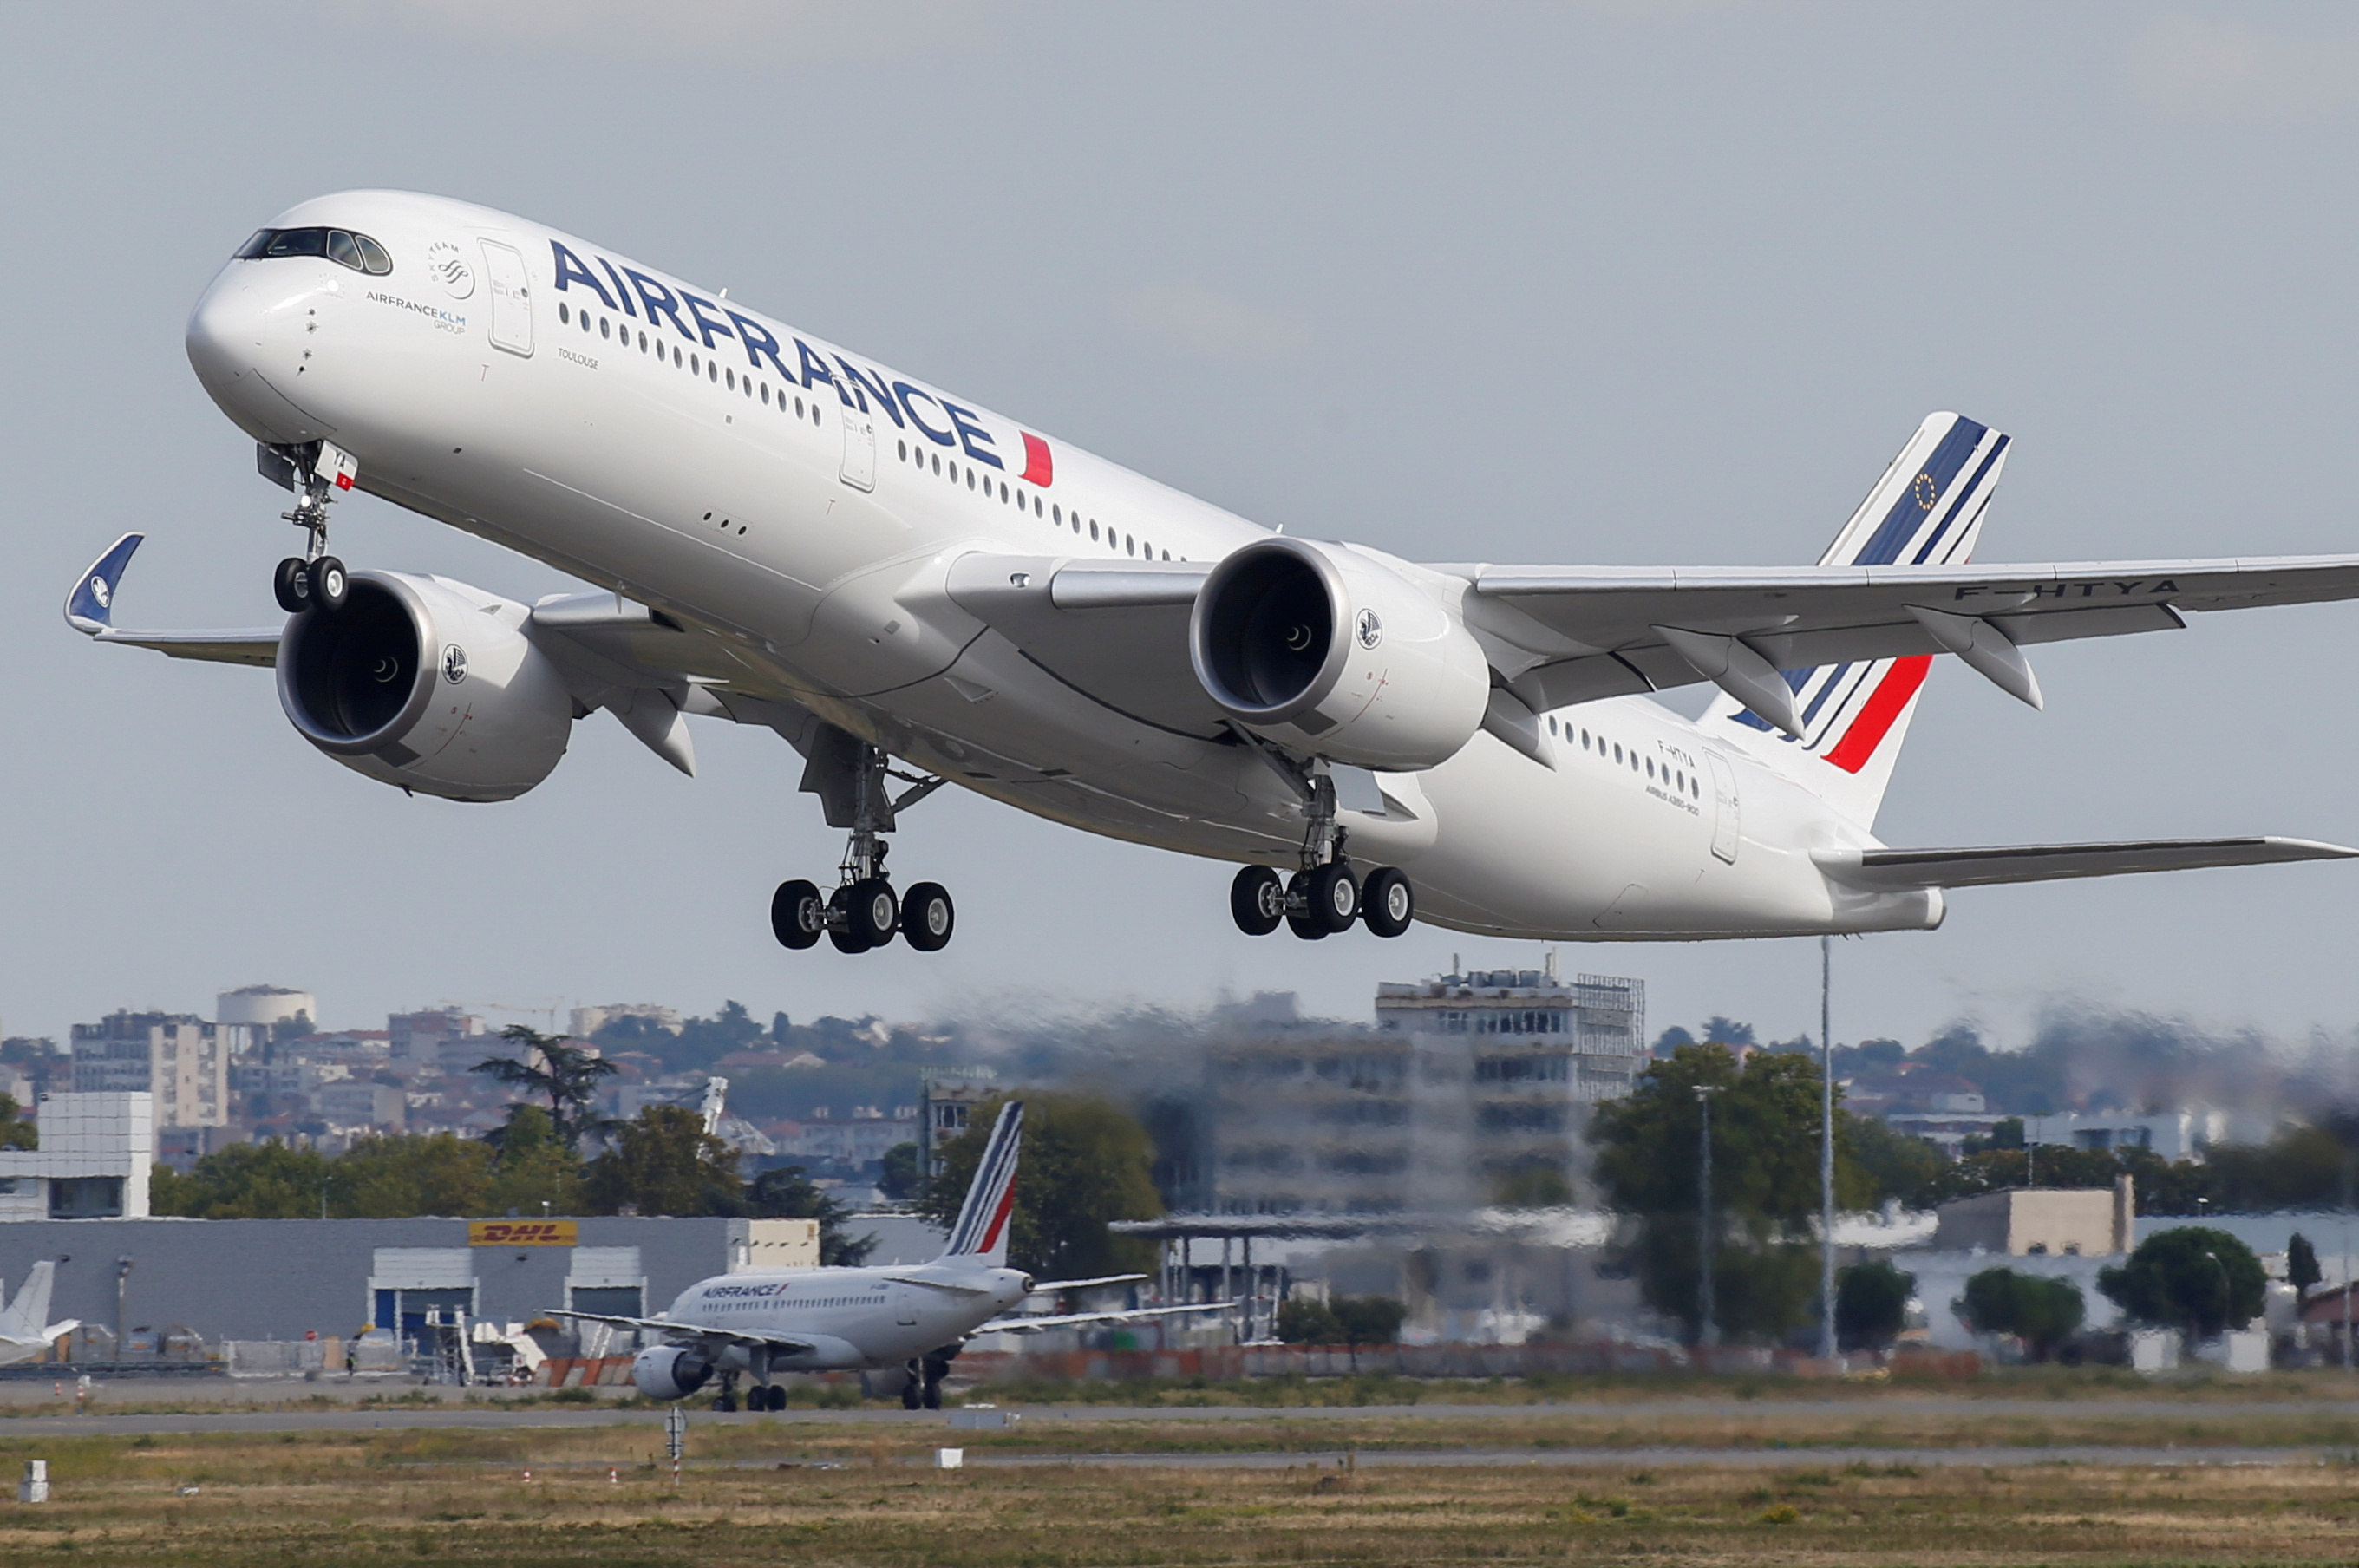 La situation se gâte : Air France veut du chômage partiel pendant deux ans. Suffisant ?